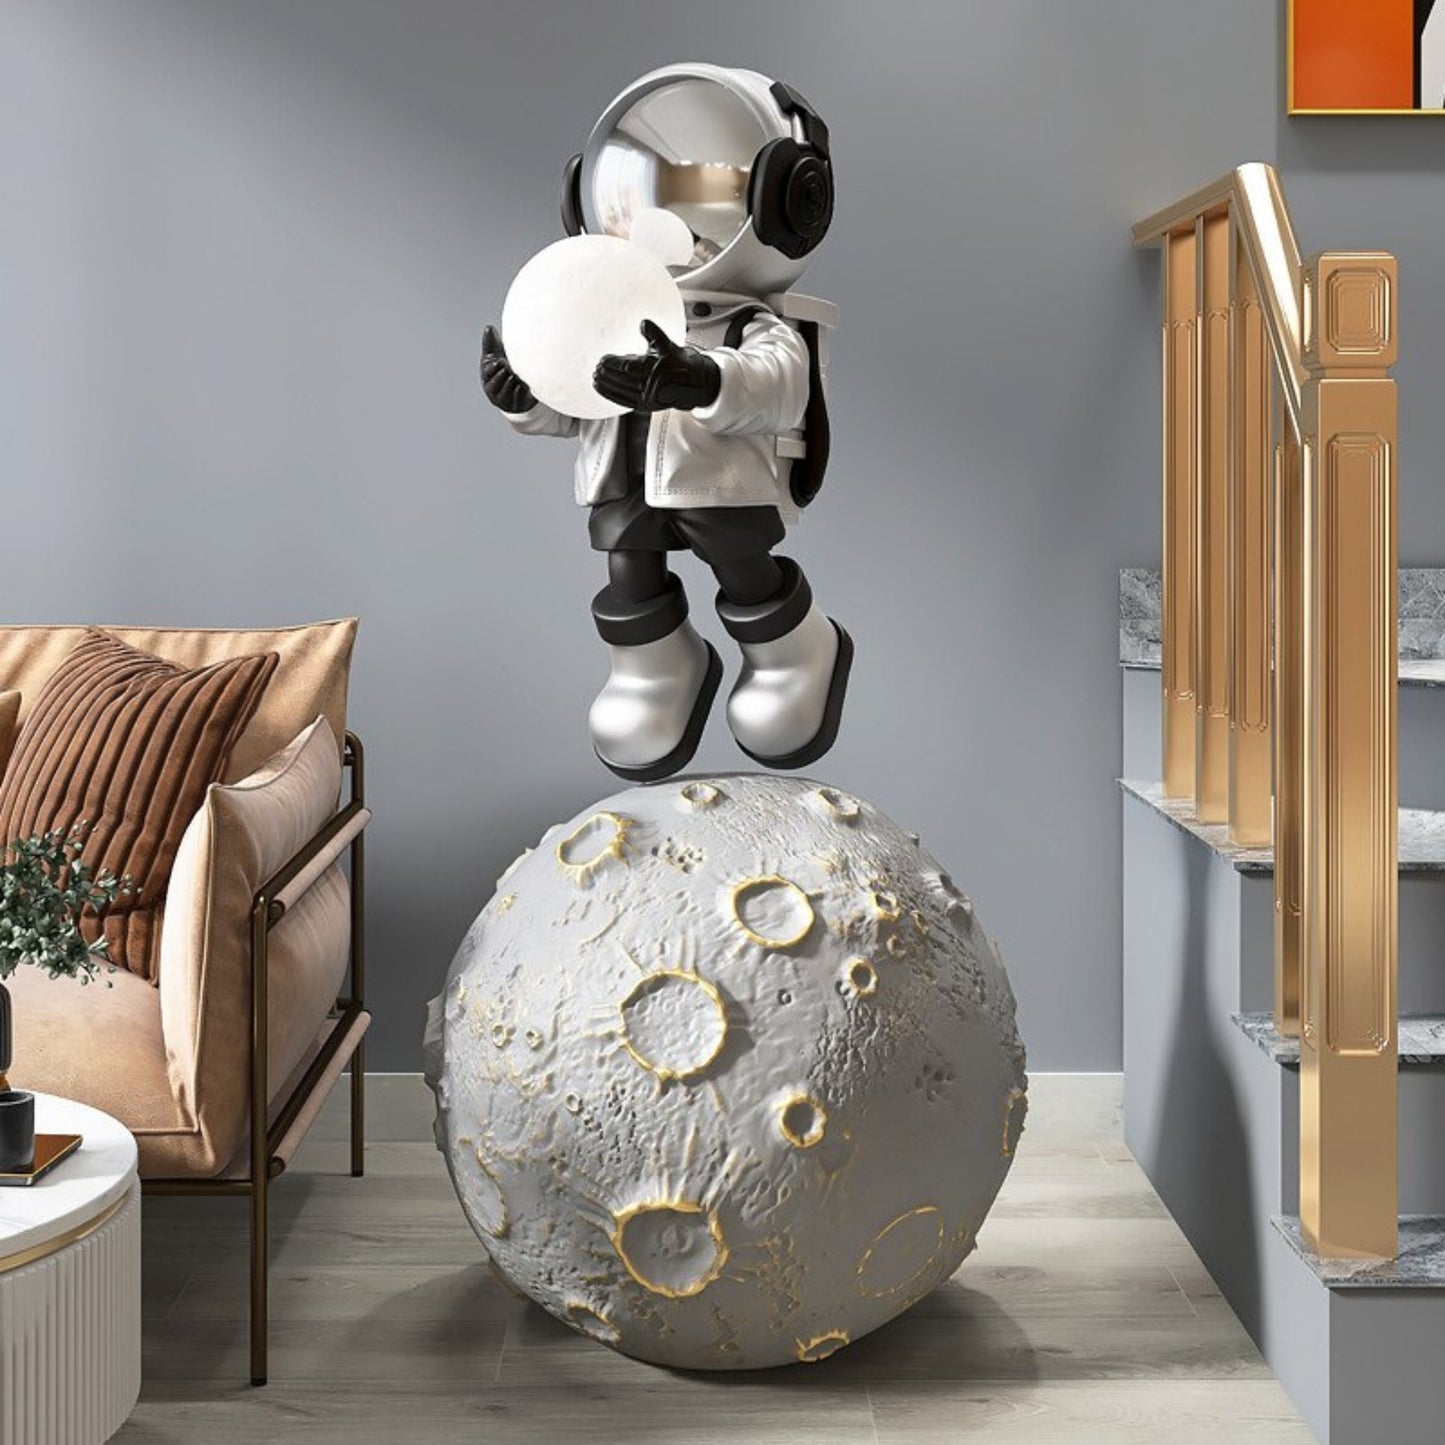 43in (110cm) Astronaut Fiberglass Statue Luxury Home Interior Decoration